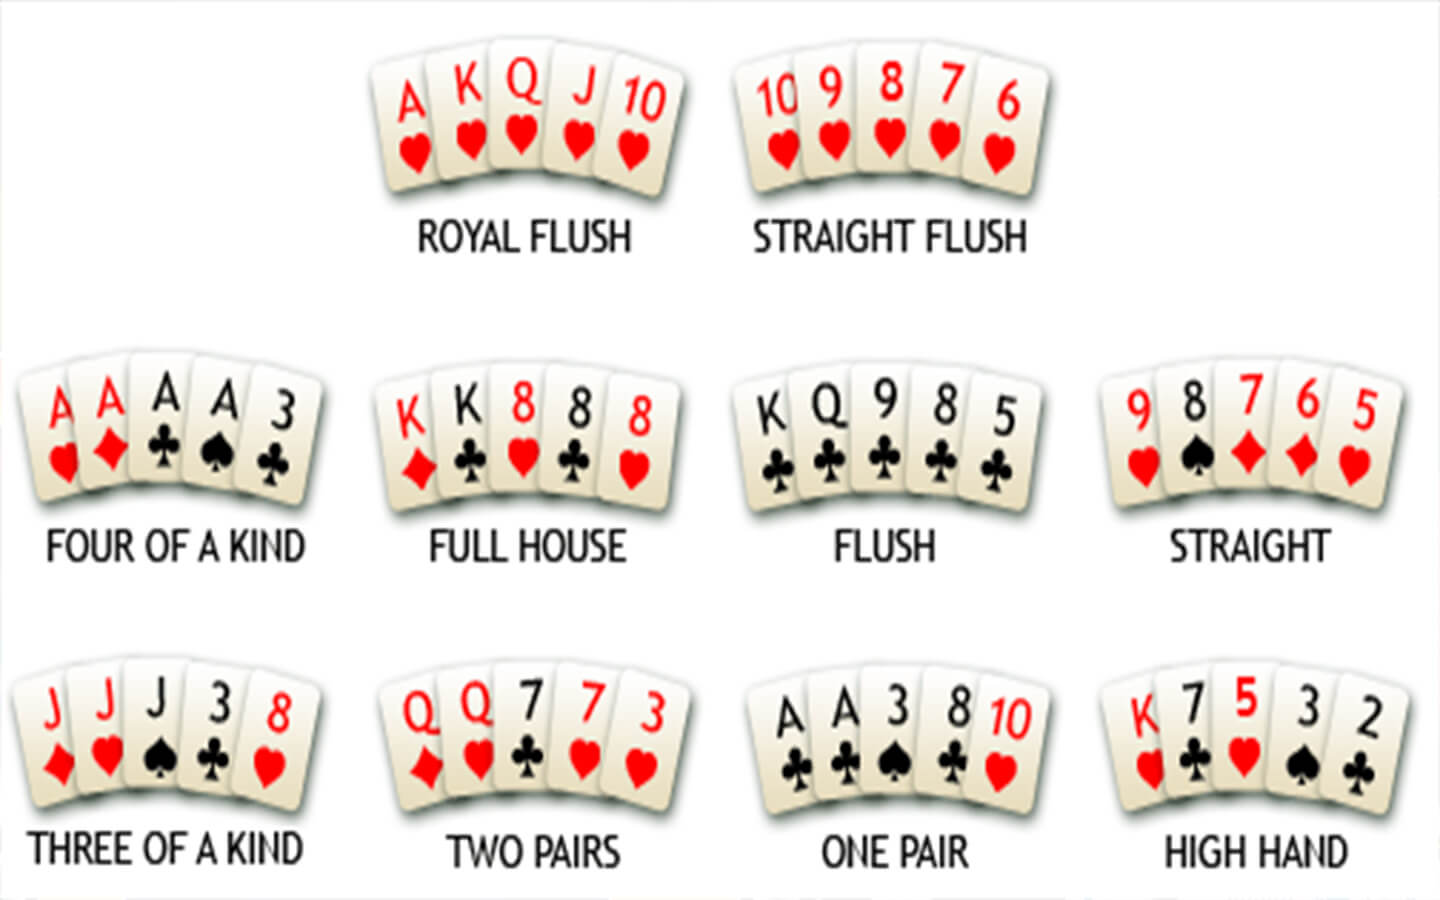 Populaire casinokaartspellen in België Spel proces